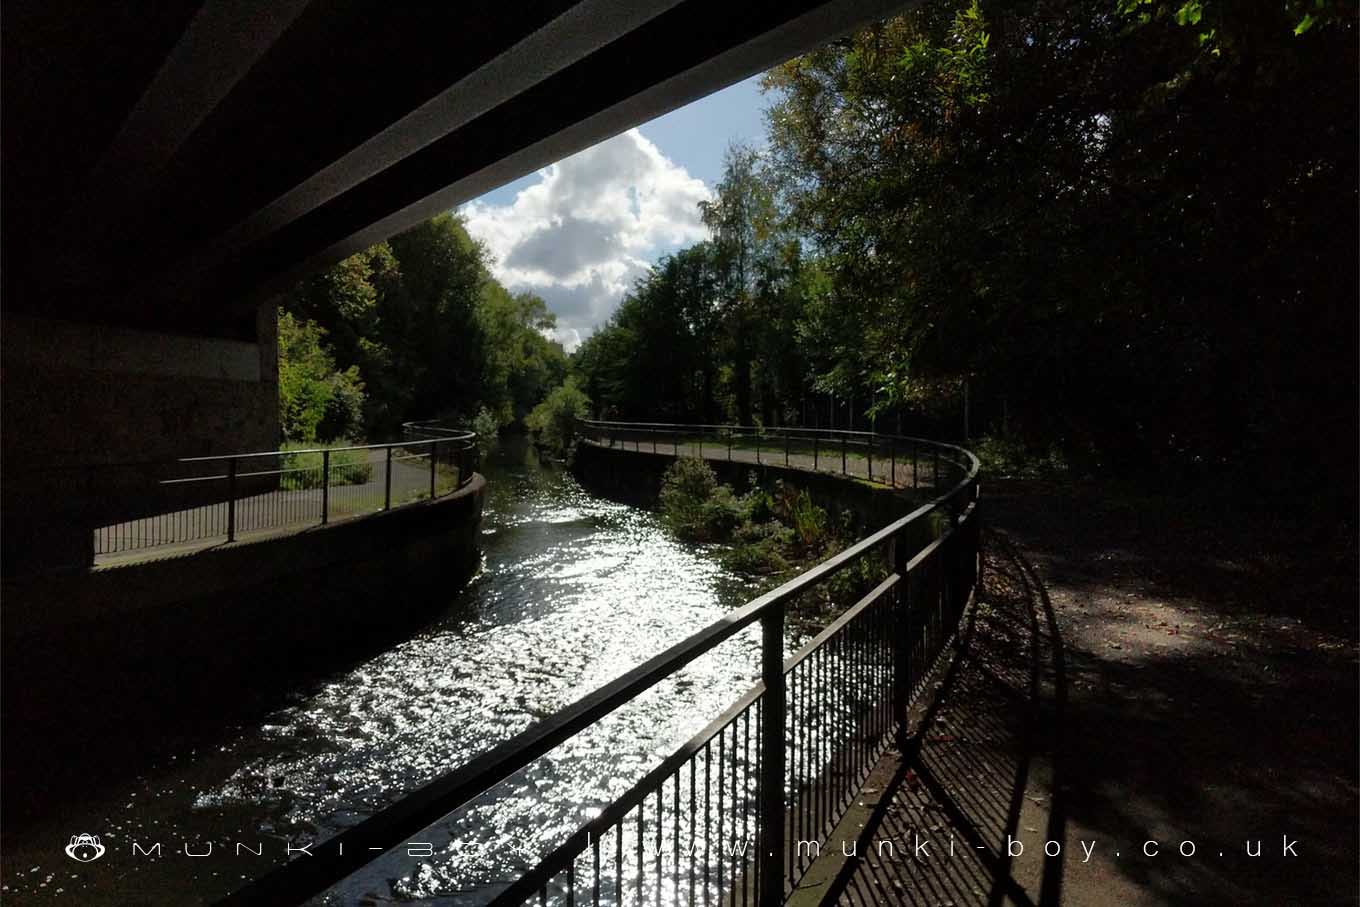 River Douglas at Wigan by munki-boy